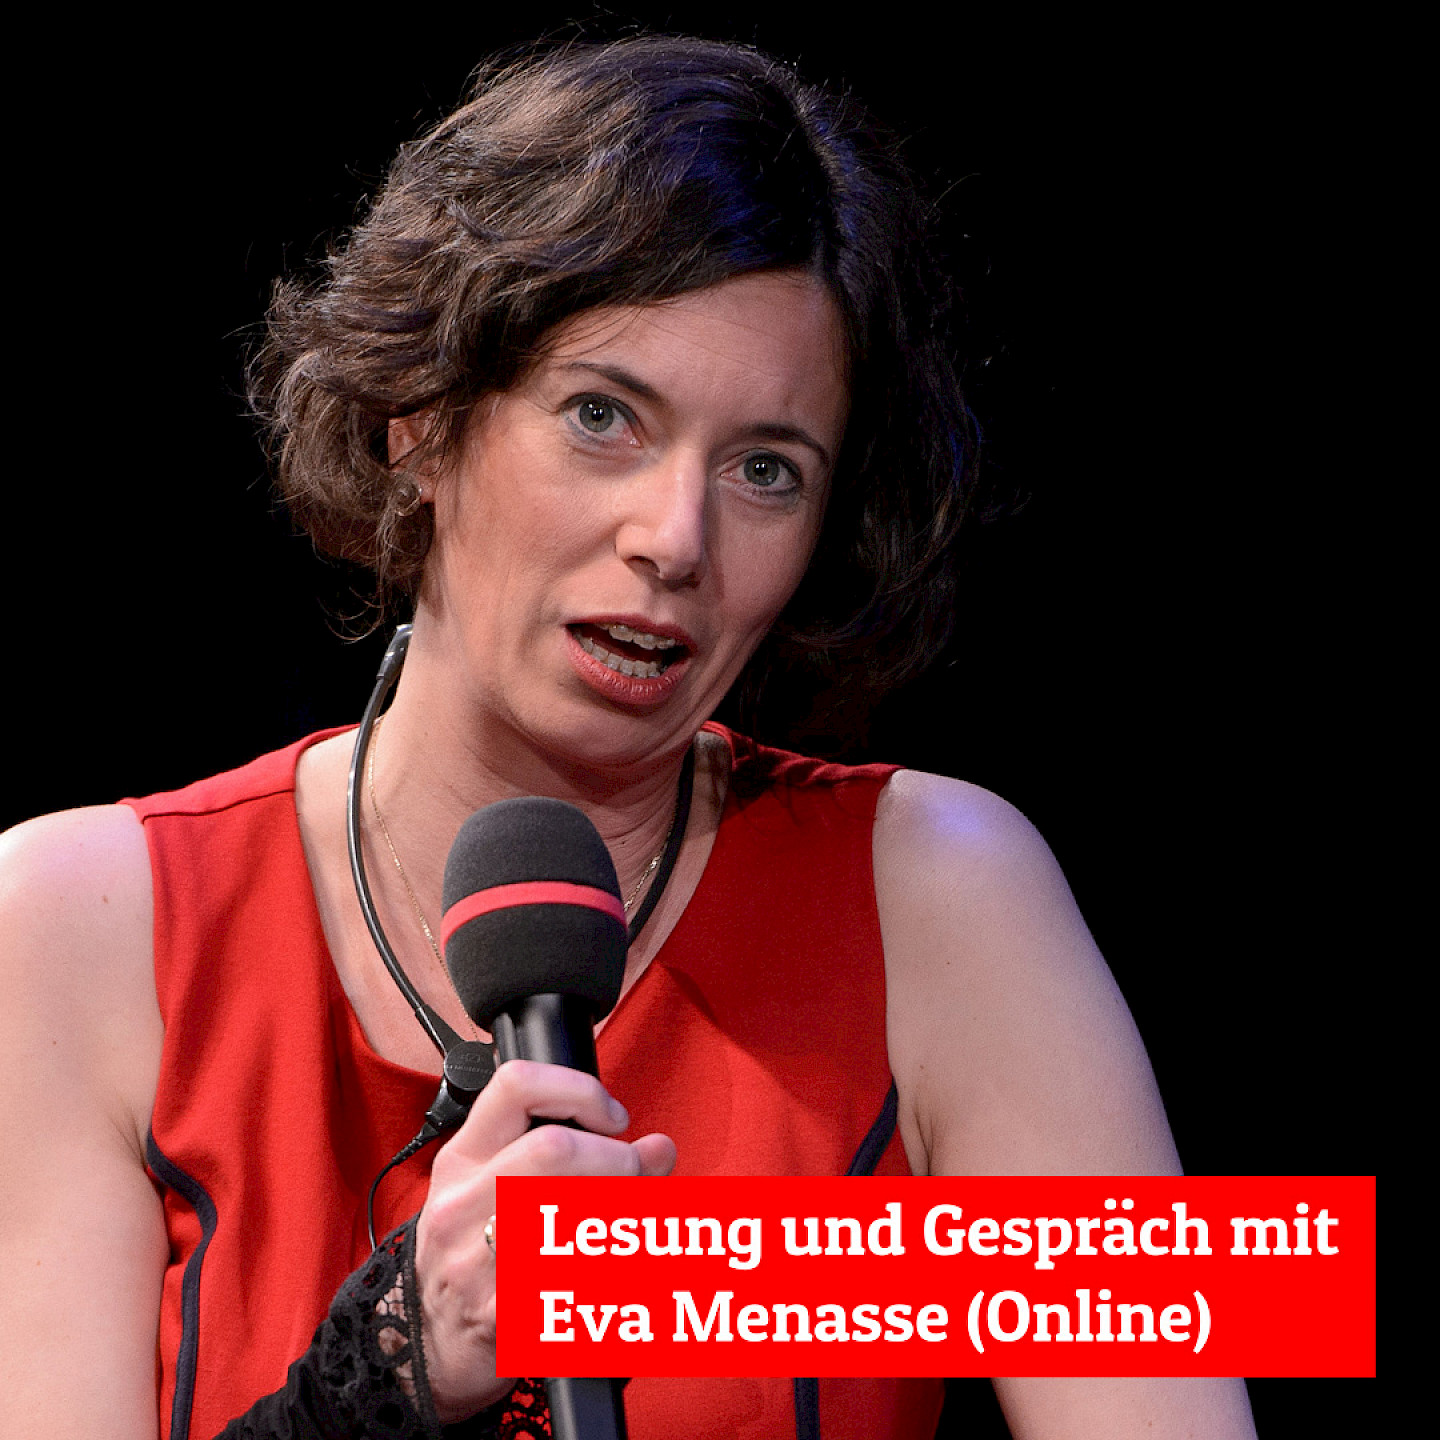 Lesung und Gespräch mit Eva Menasse